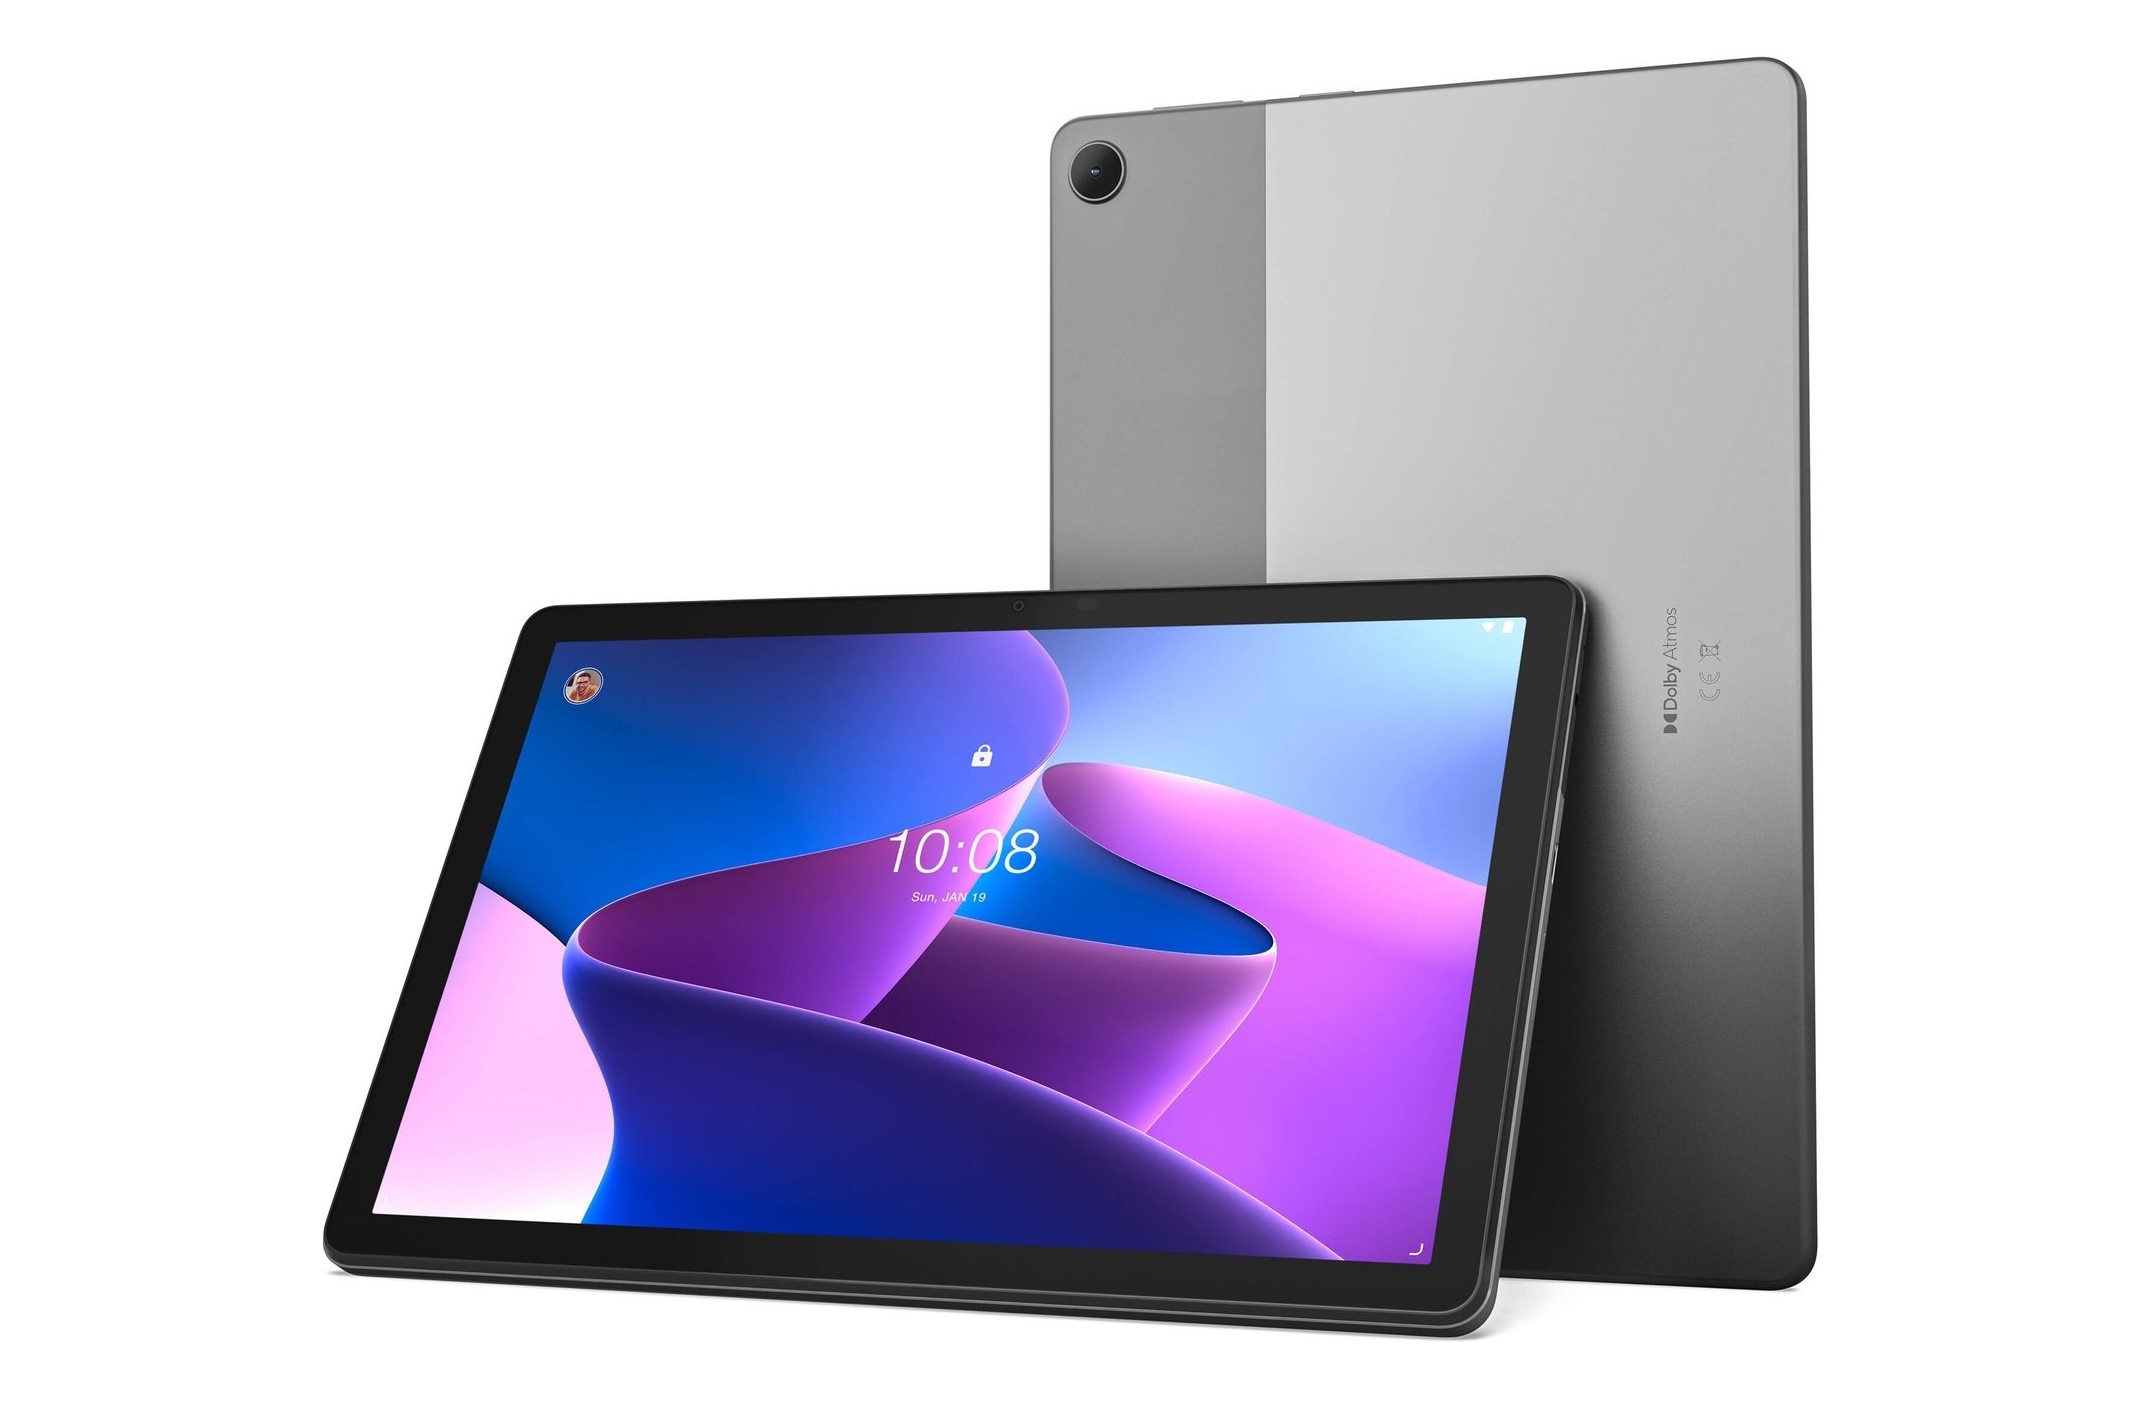 Lenovo Tab M10 (3. Generation): Tablet mit 10-Zoll-Display und 5100mAh-Akku mit 50 Euro Rabatt